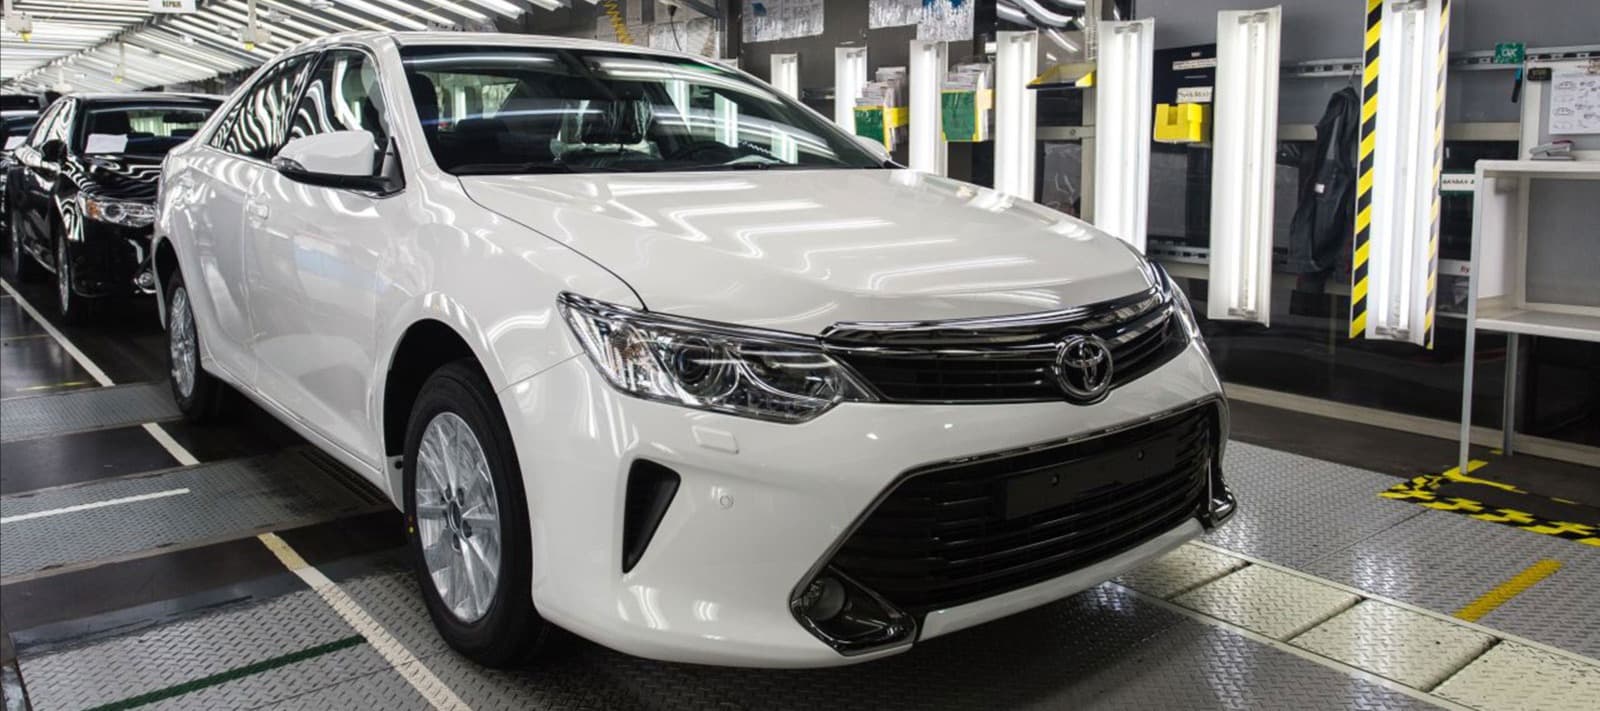 Фото новости: "Toyota прекратит производство автомобилей в России"